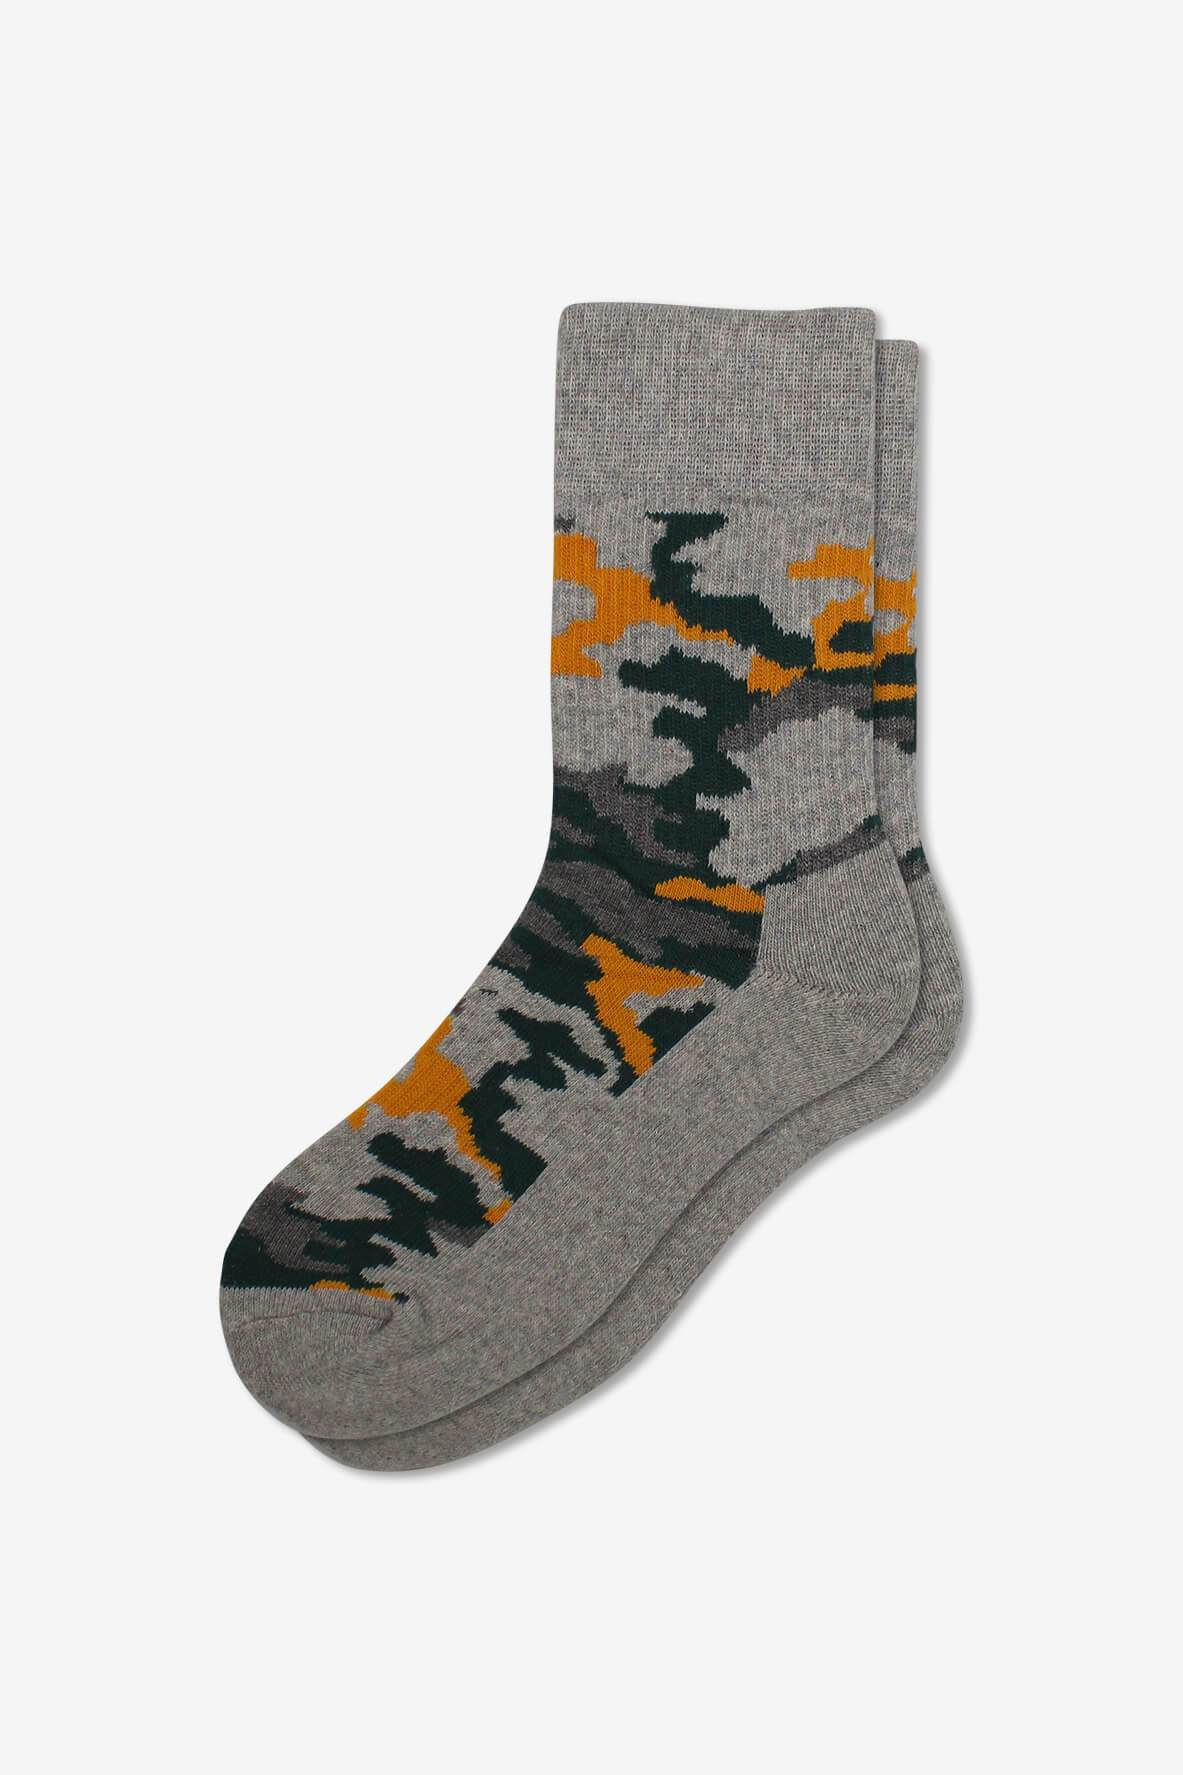 Socks IMG_5394, socks, GoTie